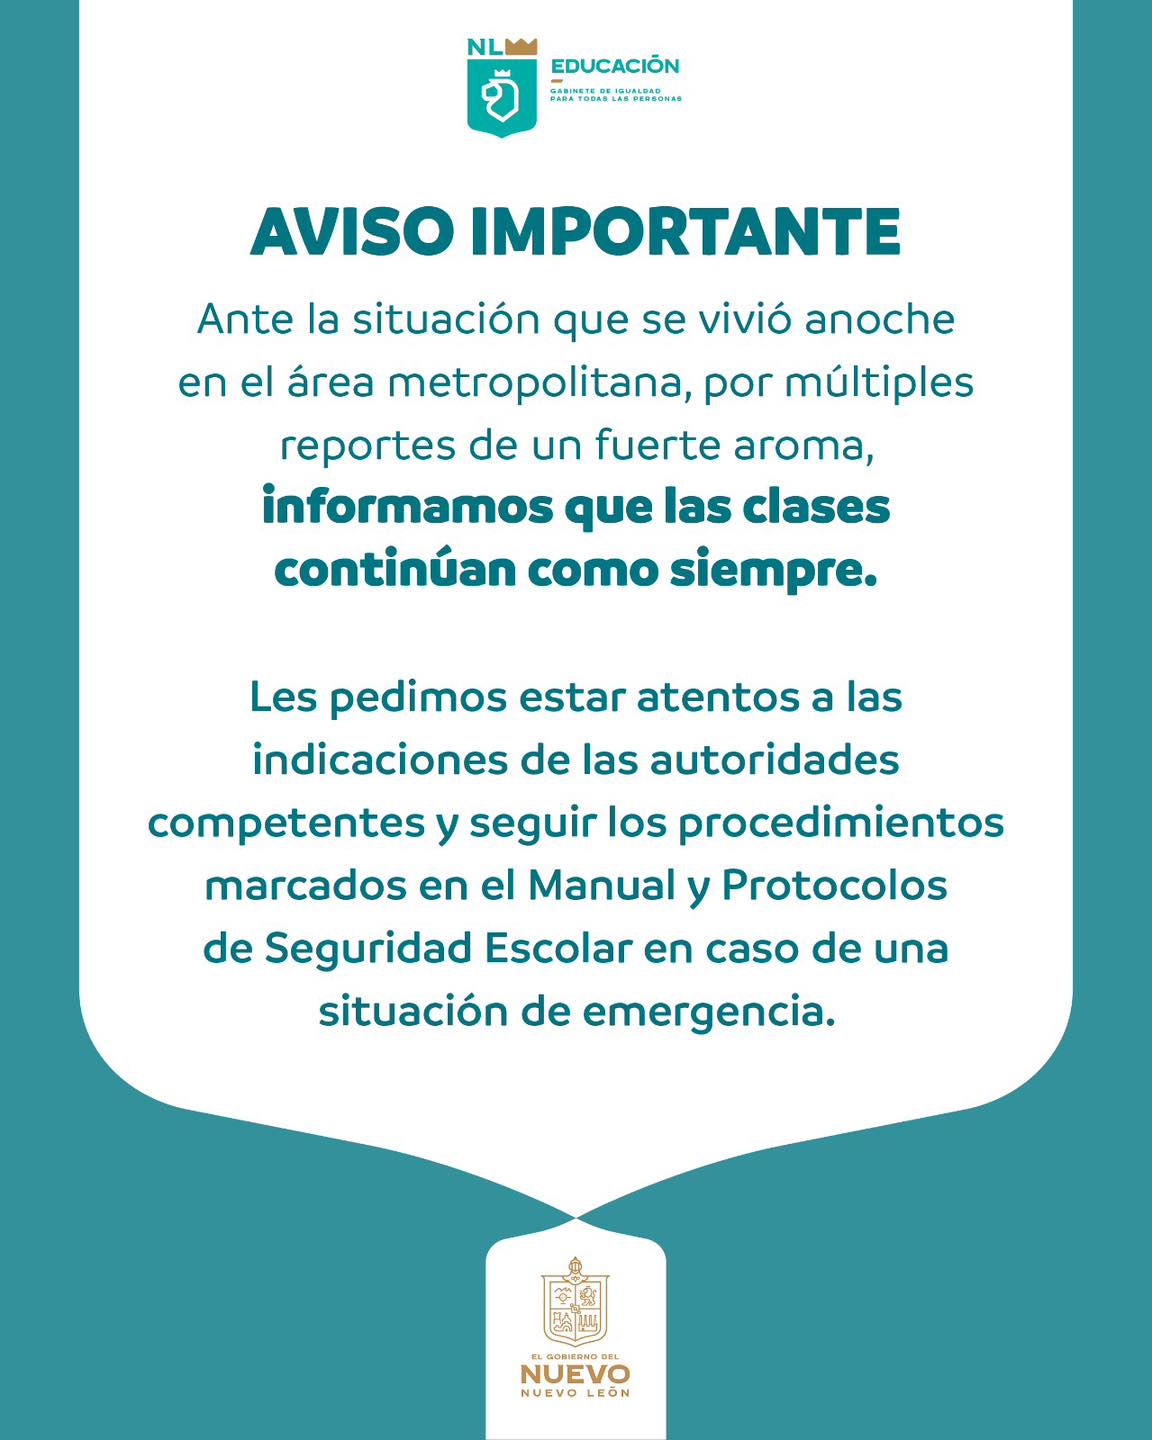 Foto: Secretaría de Educación de Nuevo León